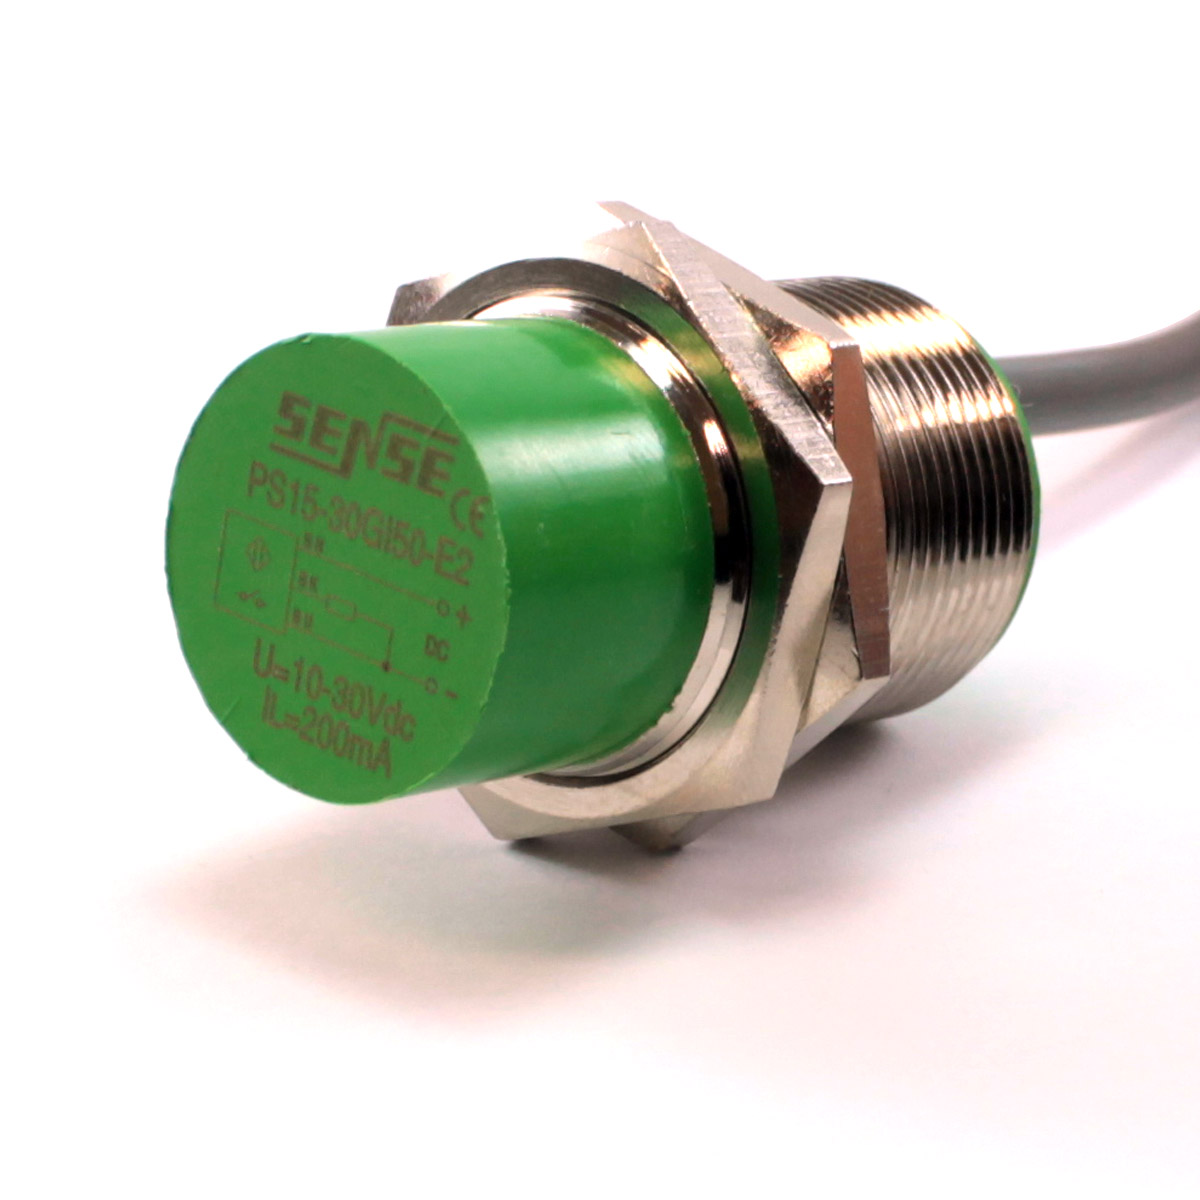 Details about   N Sense PS15-30GP50-E Inductive Proximity Sensor Unit 